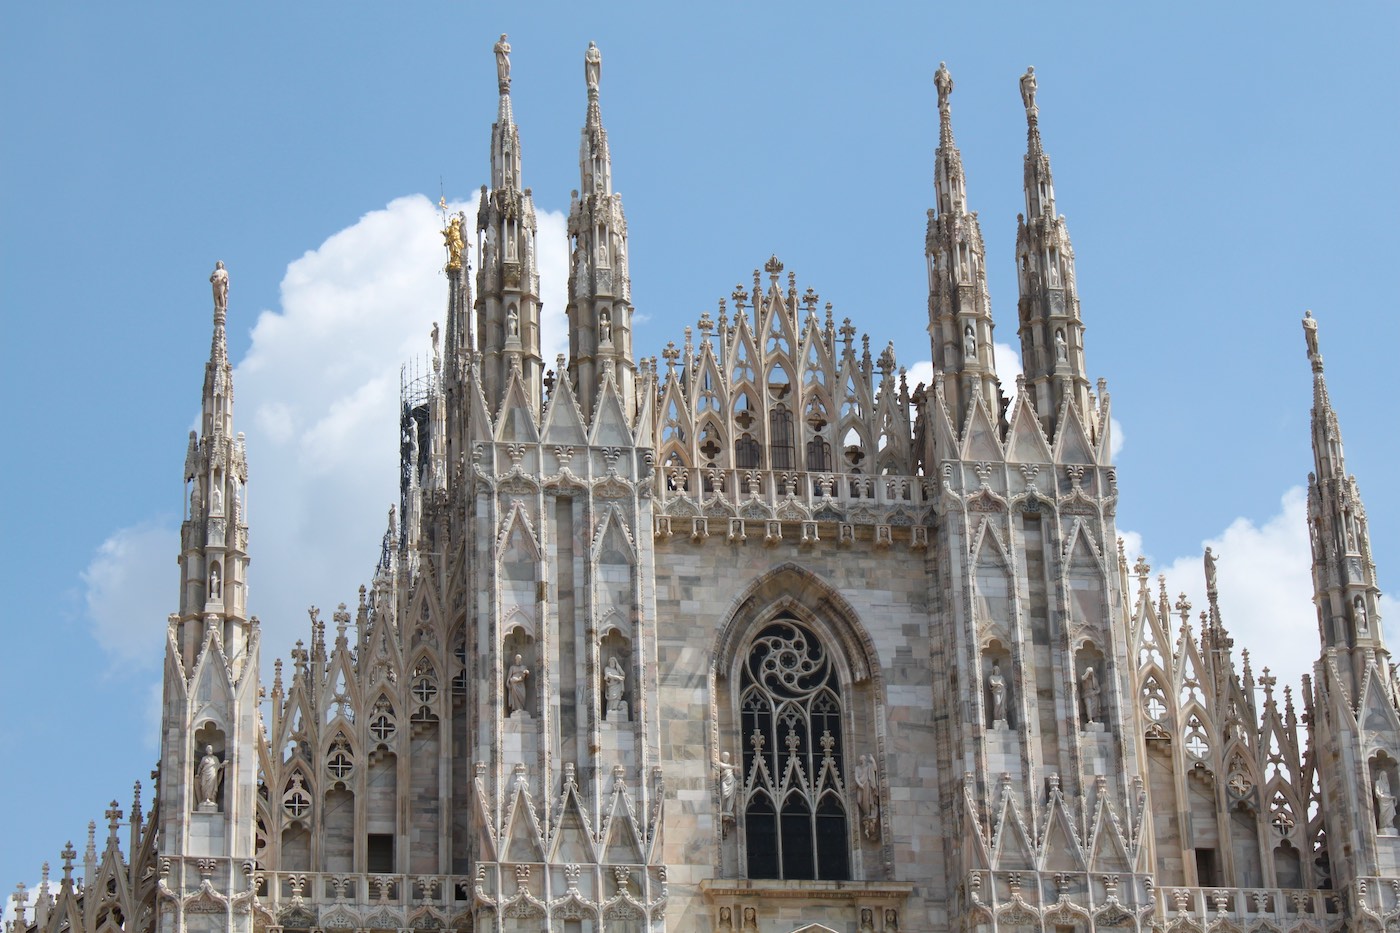 Duomo de Milan